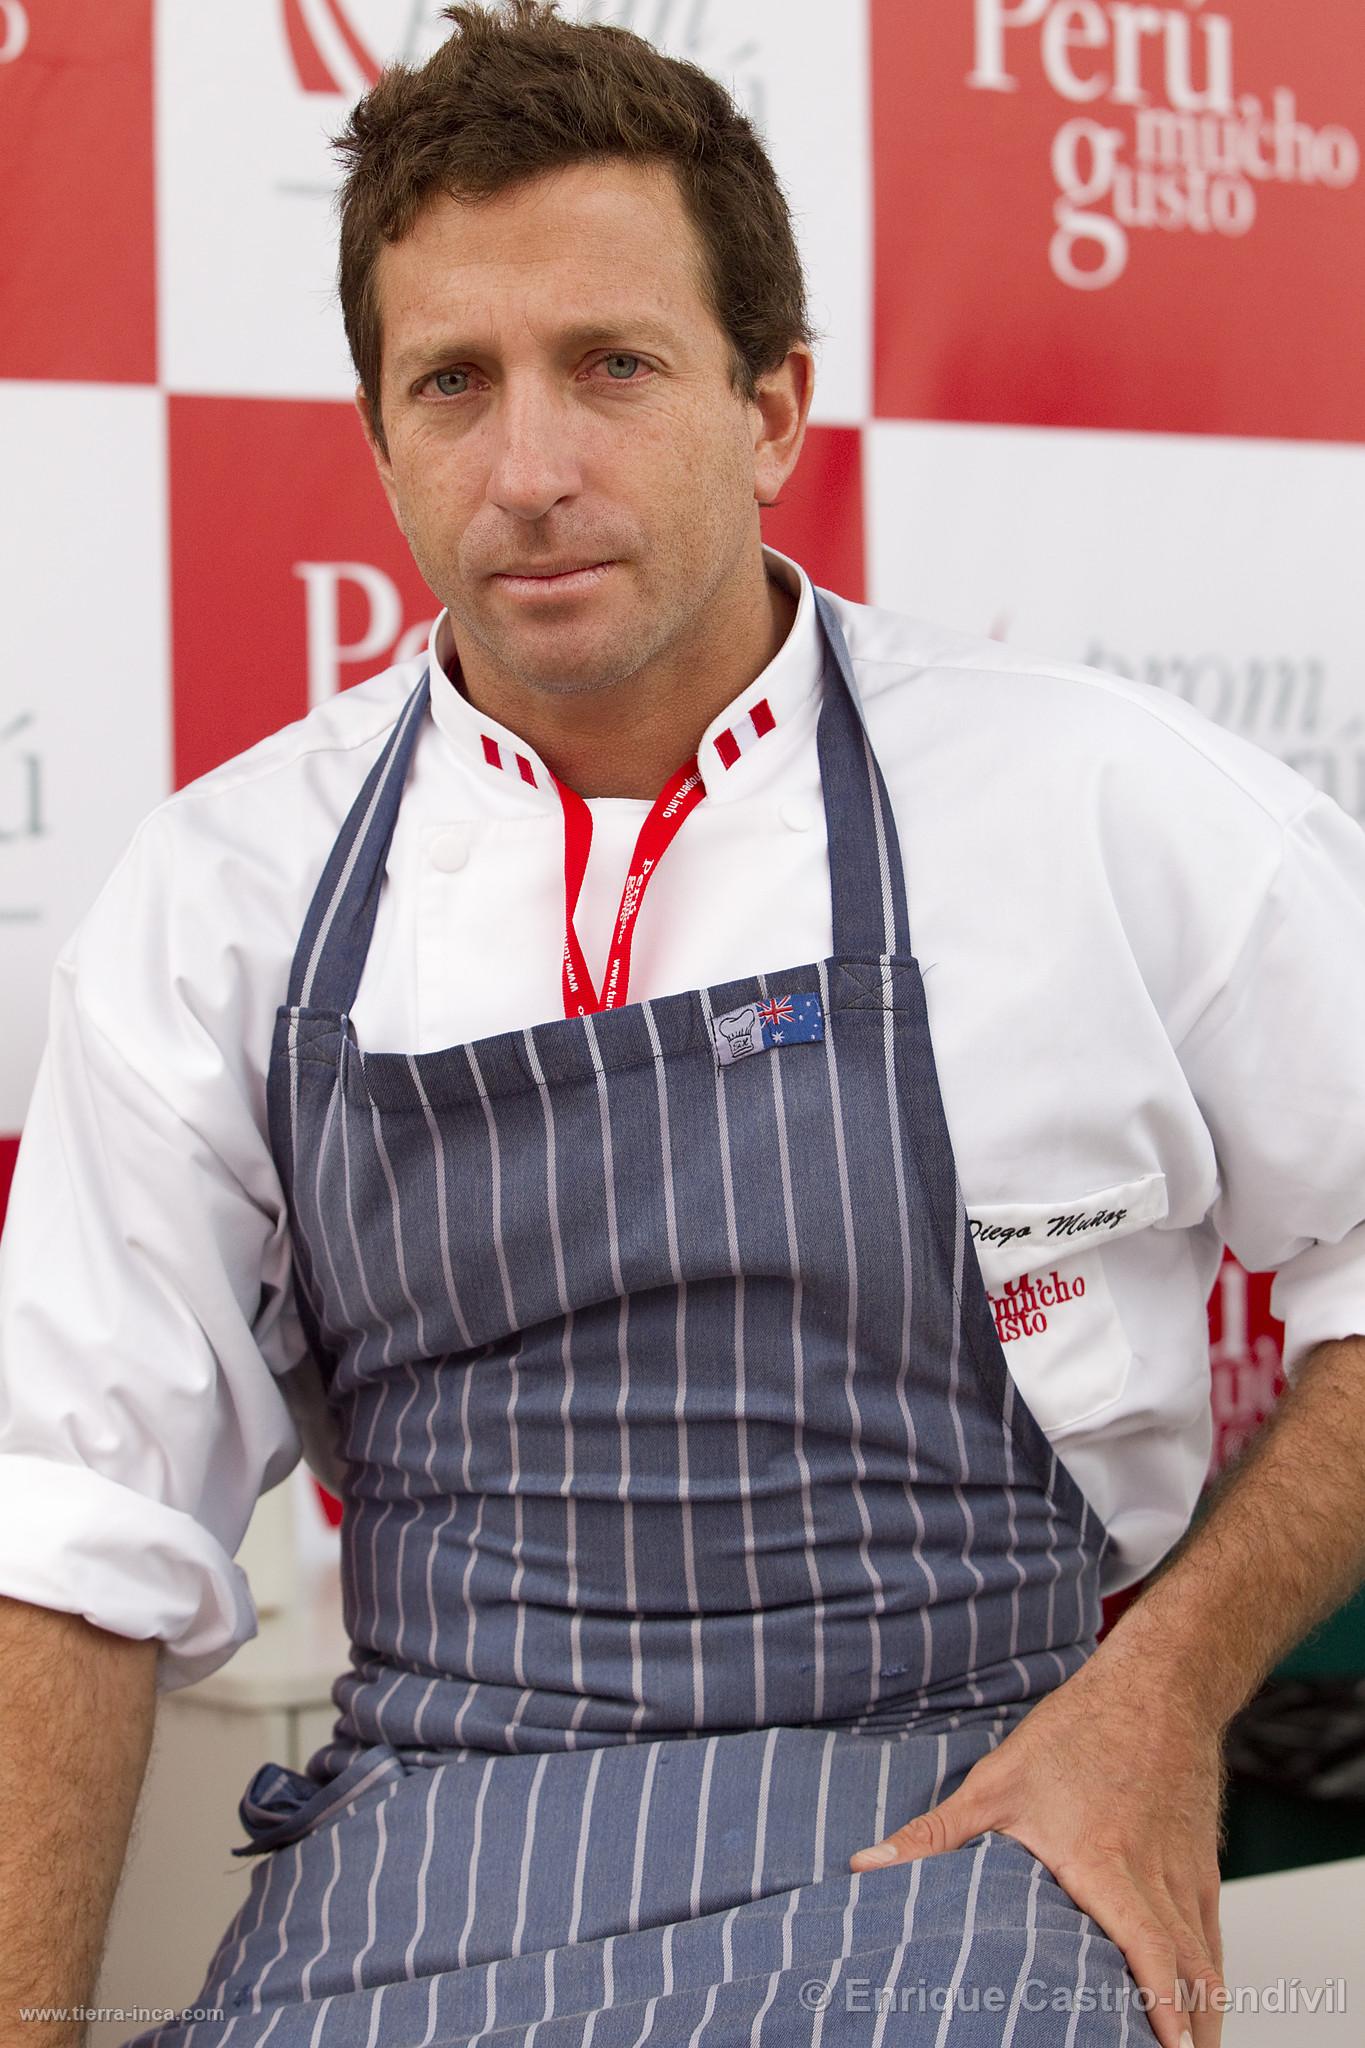 Chef Diego Muñoz